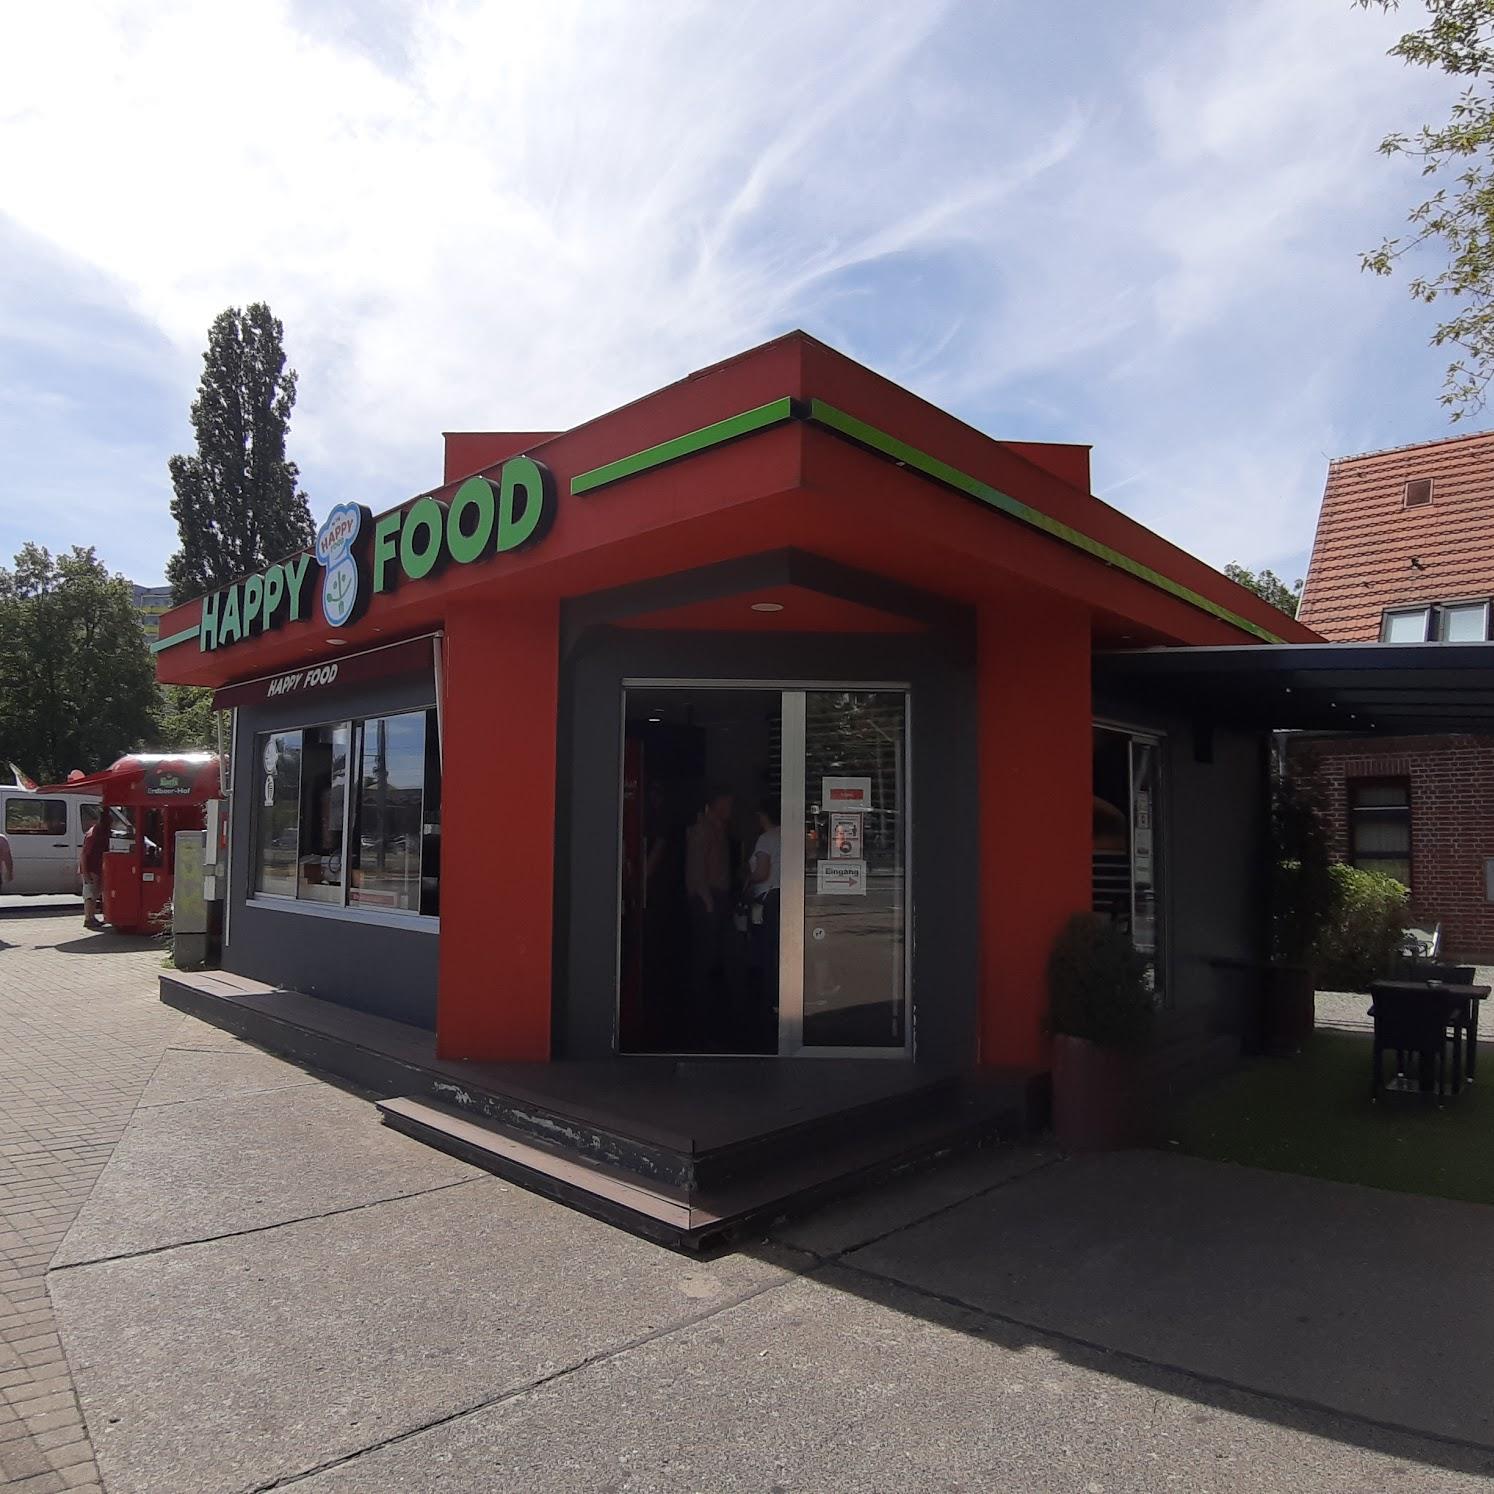 Restaurant "Happy food" in Berlin